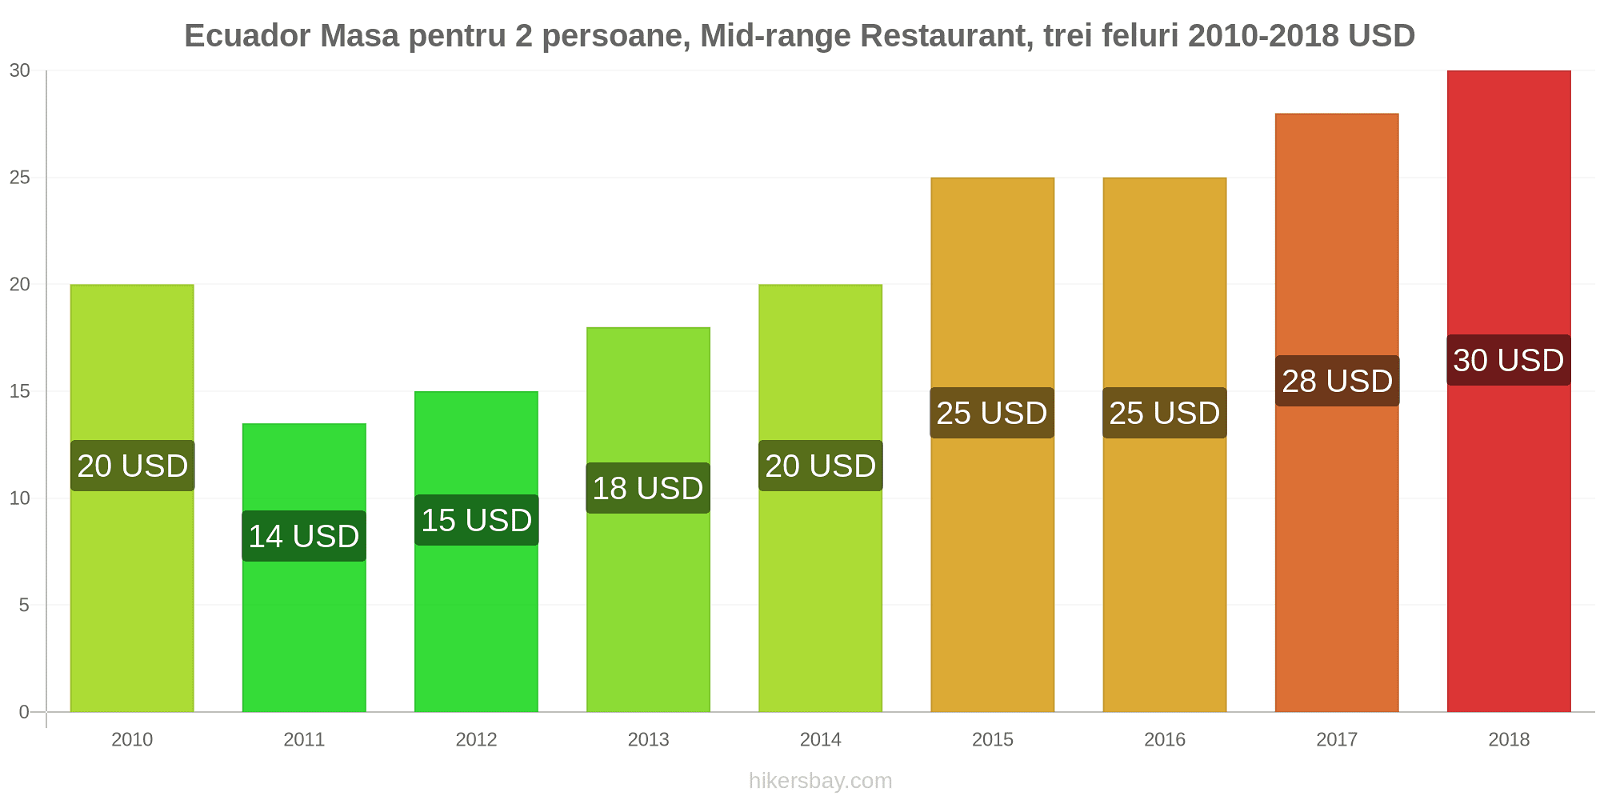 Ecuador schimbări de prețuri Masă pentru 2 persoane, restaurant de gamă medie, trei feluri de mâncare hikersbay.com